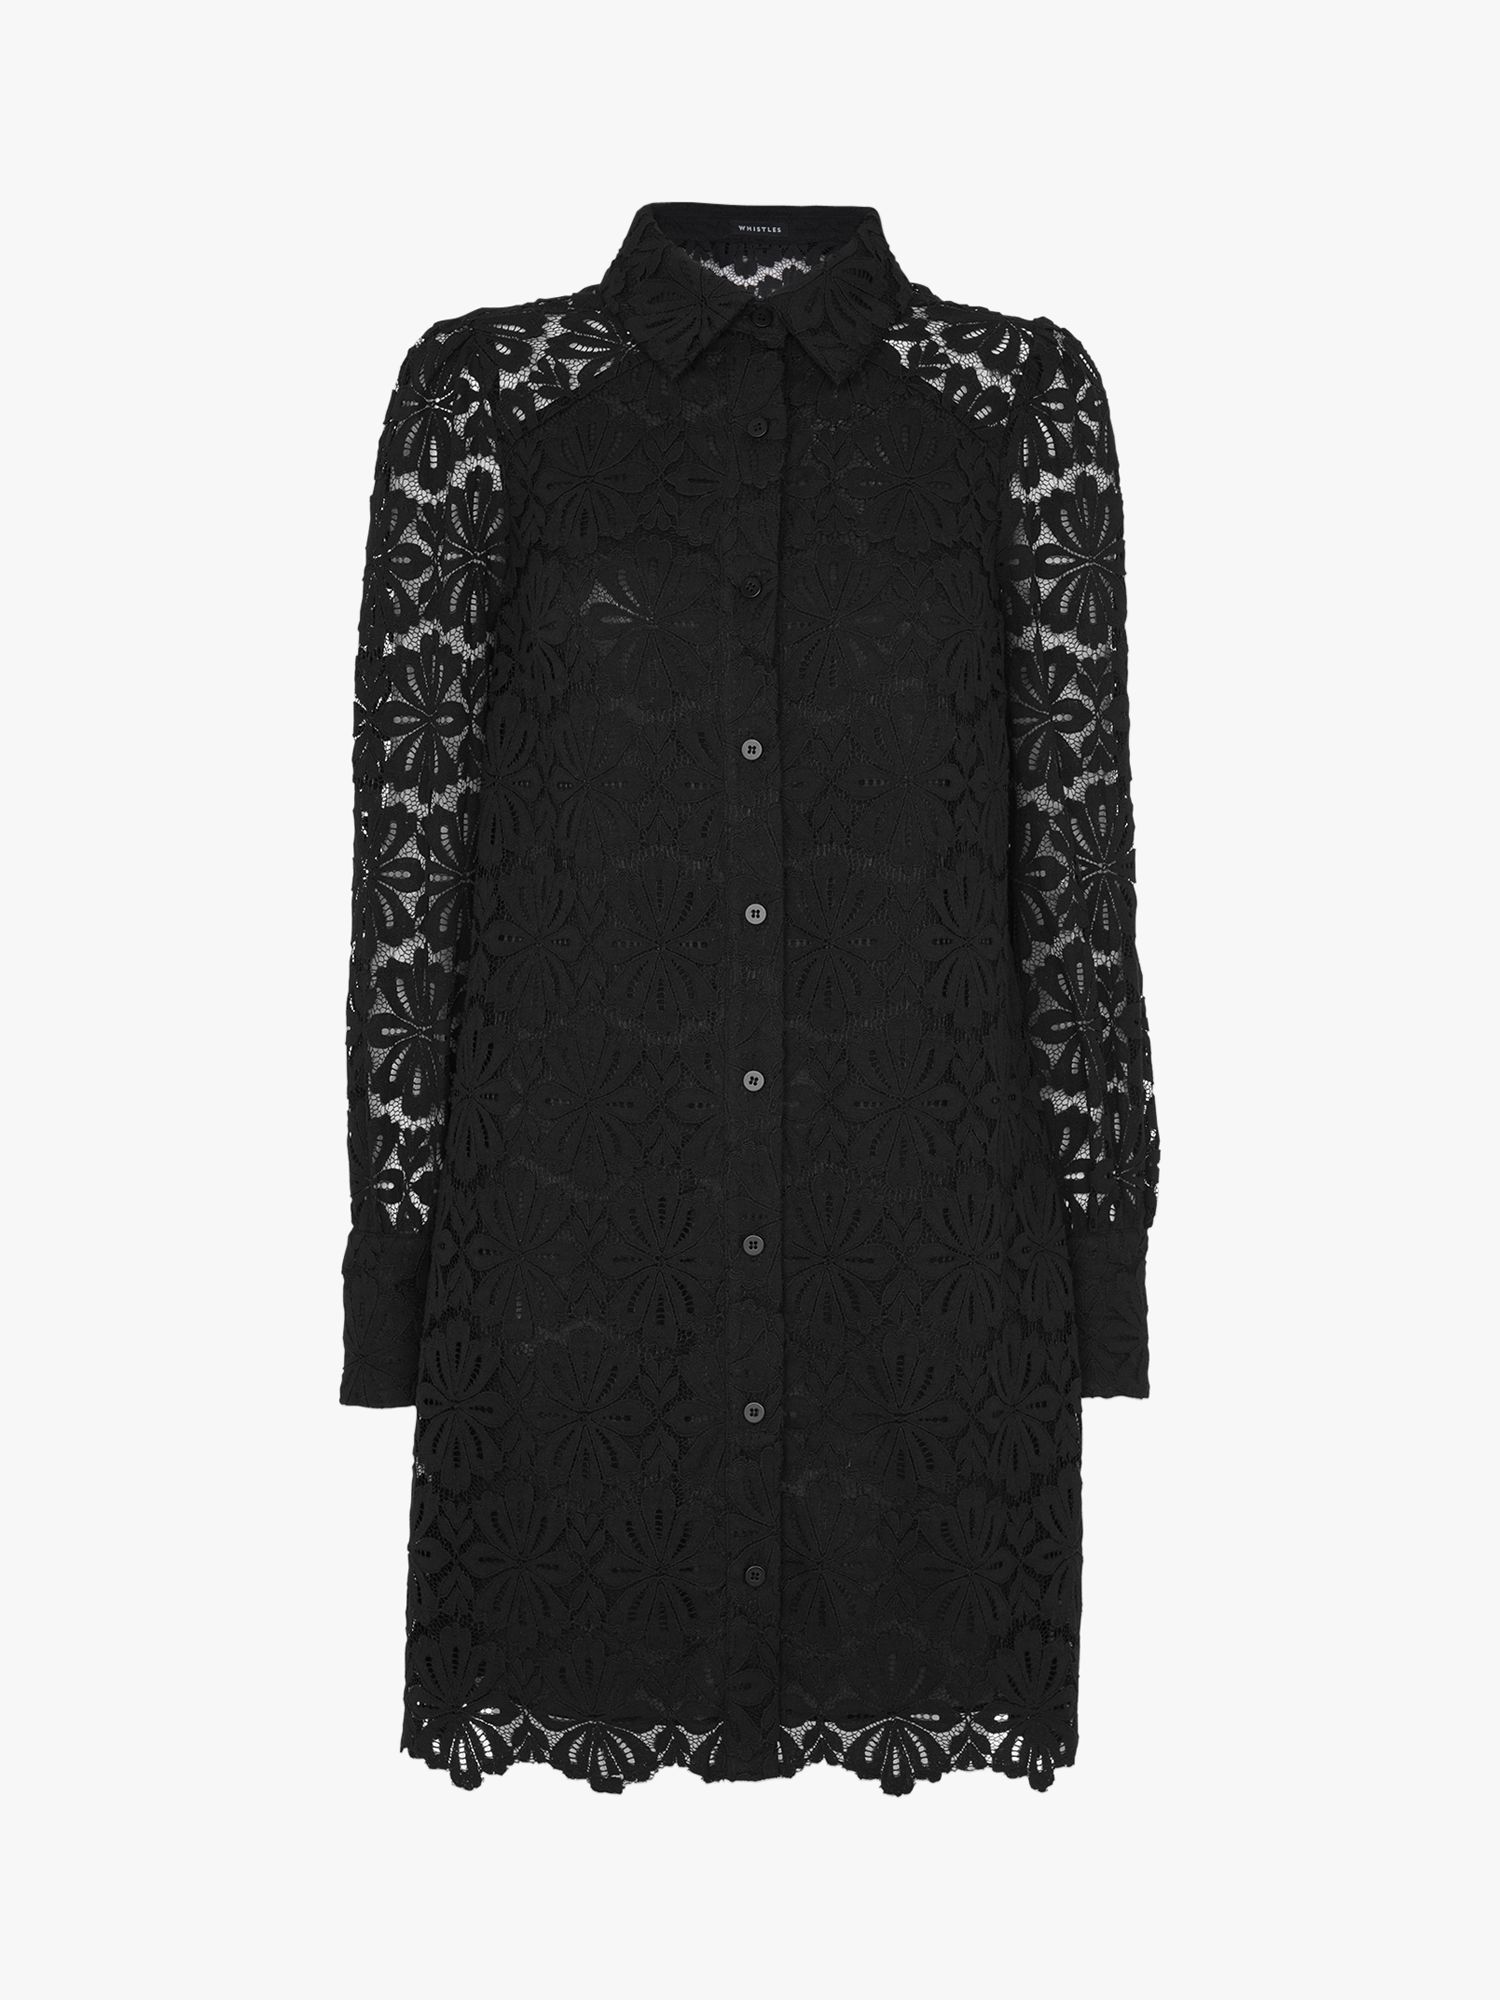 Whistles Lace Shirt Mini Dress, Black at John Lewis & Partners